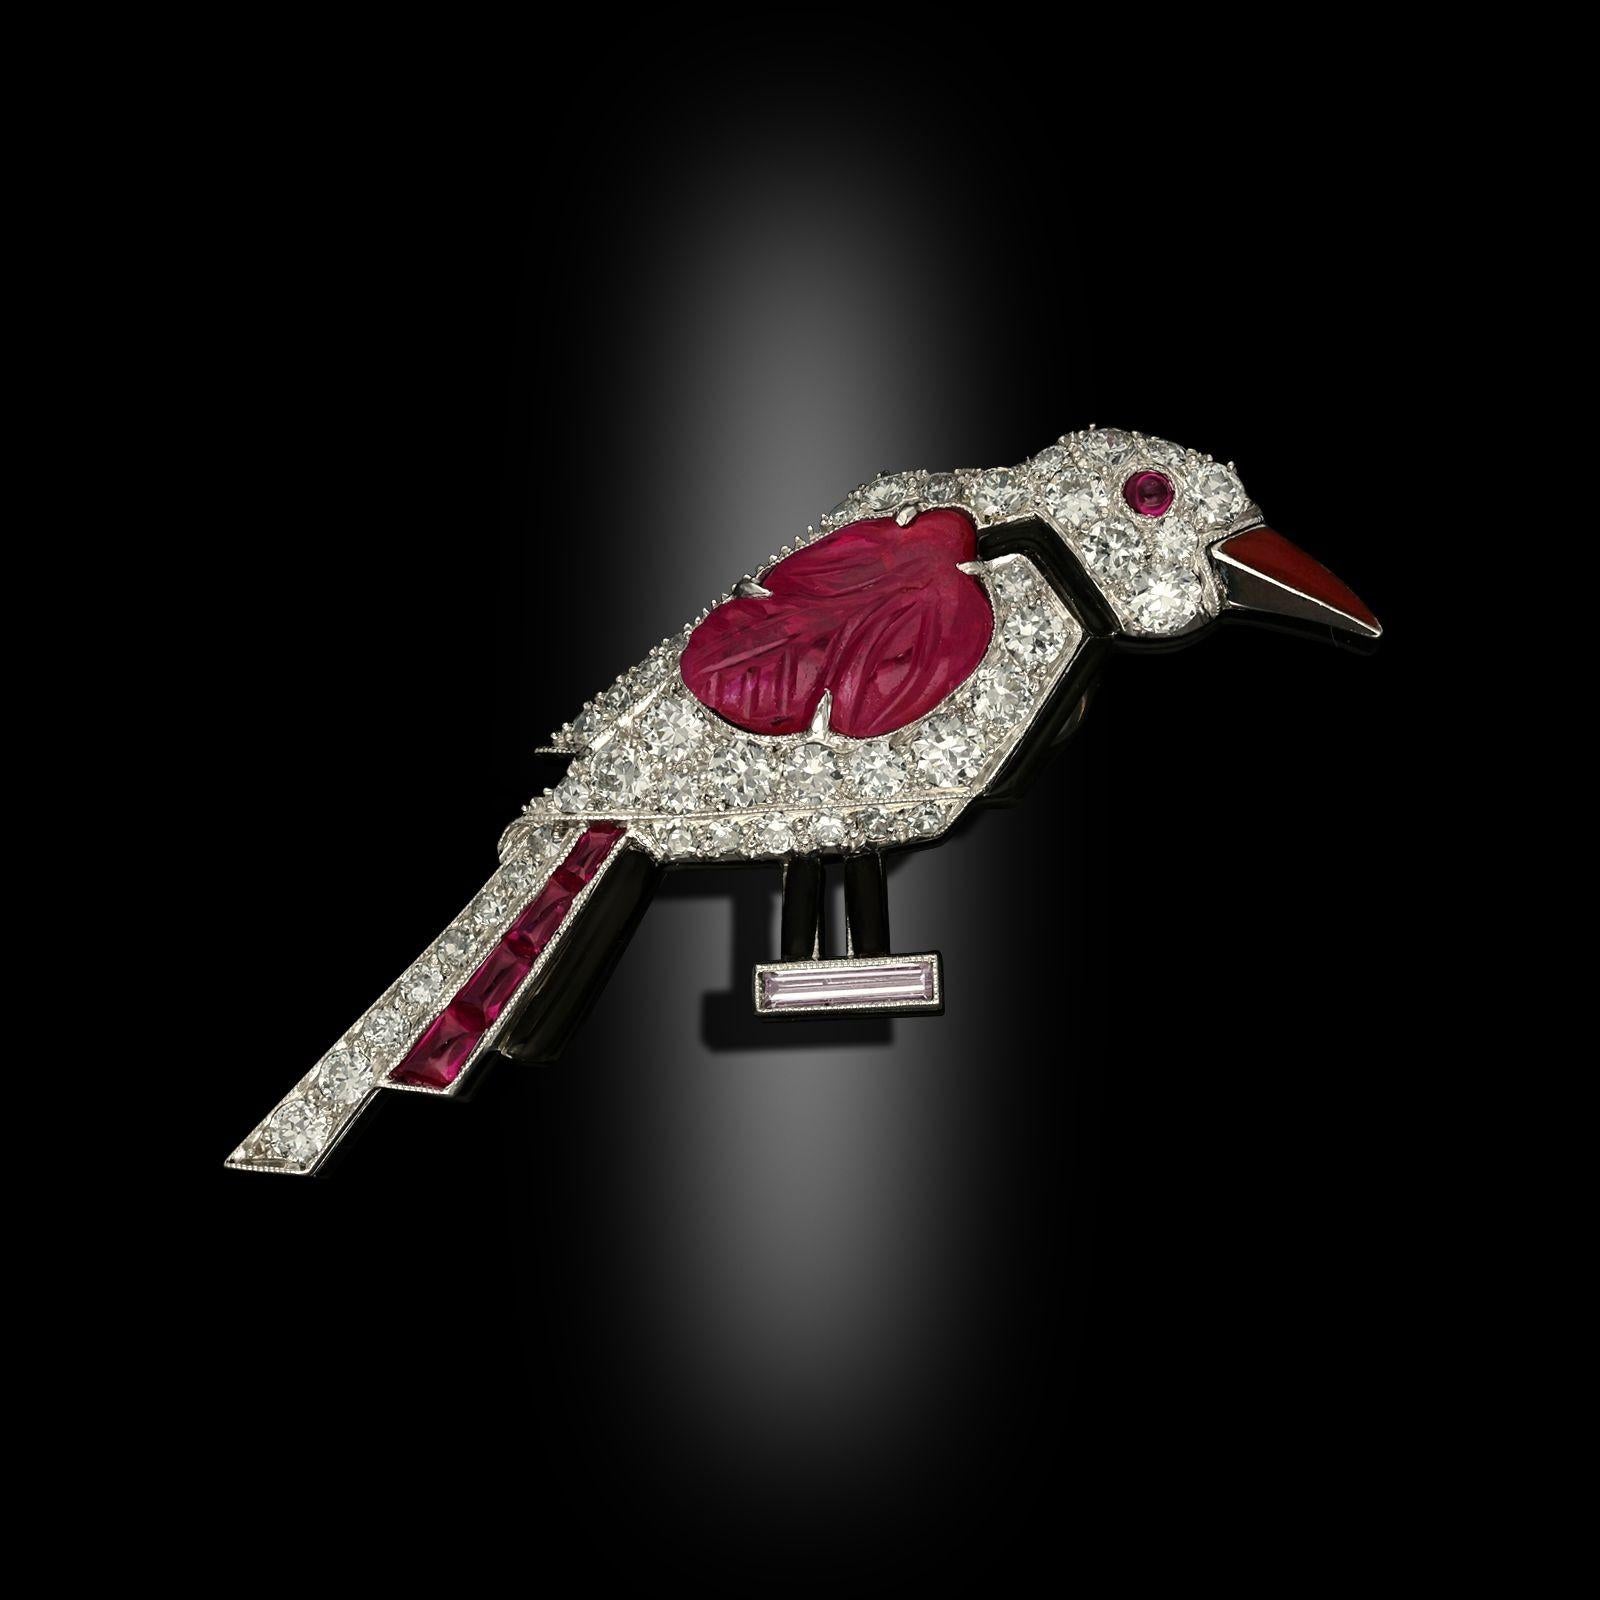 Eine stilisierte Art-Déco-Vogelbrosche von Cartier London um 1925. Die Brosche ist als stehender Vogel im Profil gestaltet, besetzt mit Diamanten im alten europäischen Schliff, einem geschnitzten Rubin als Flügel, Akzenten aus Onyx, polierten